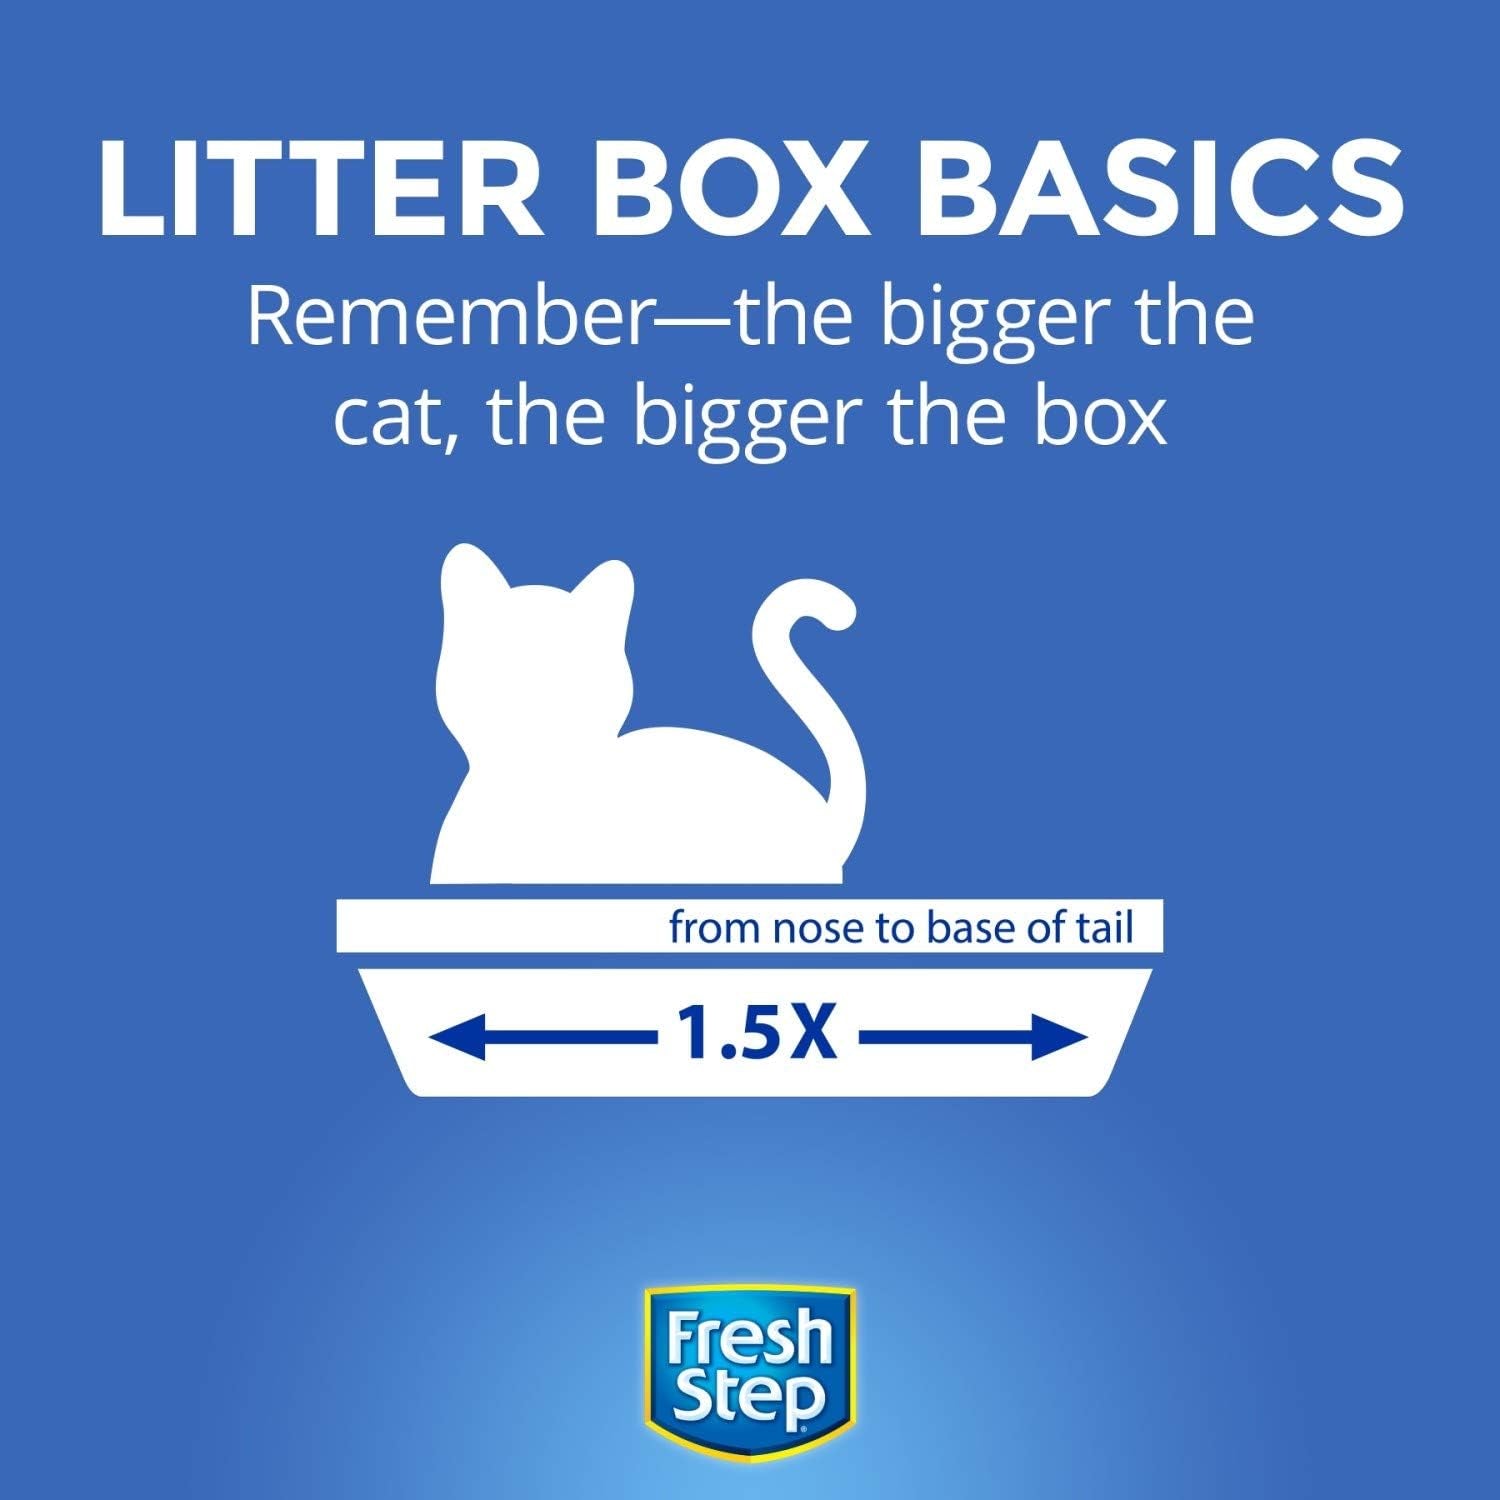 Fresh Step Lightweight Clumping Cat Litter - Unscented 15.4 lbs